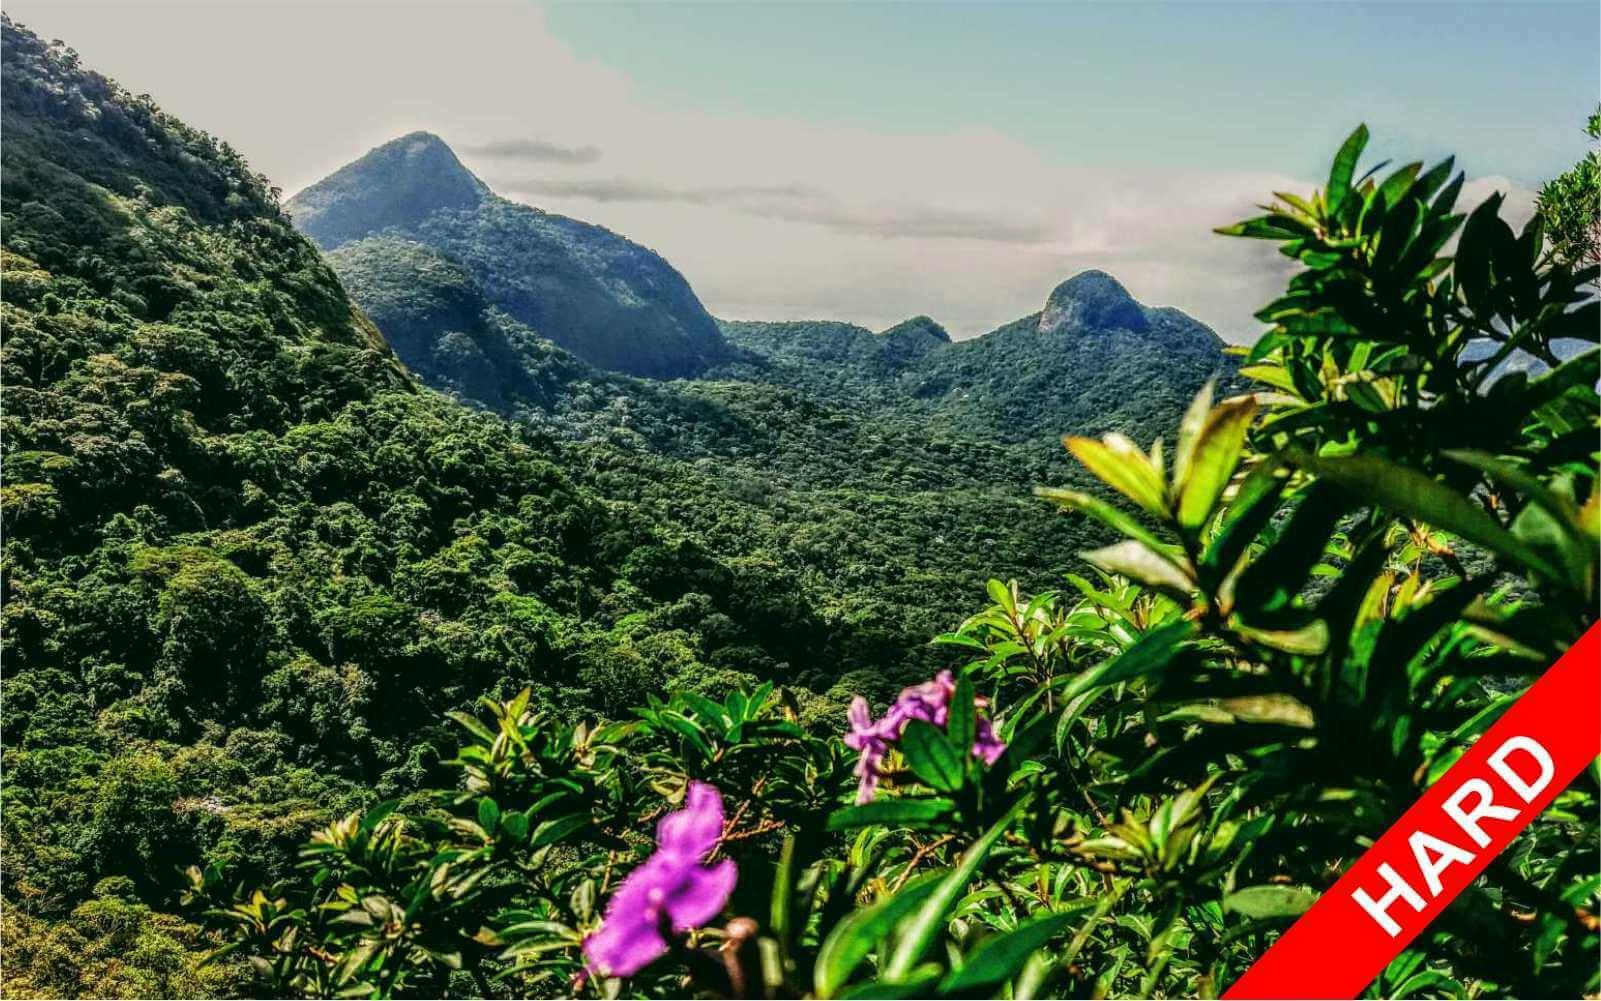 Circuito guiado de aventura senderismo de alto nivel en la selva de Tijuca